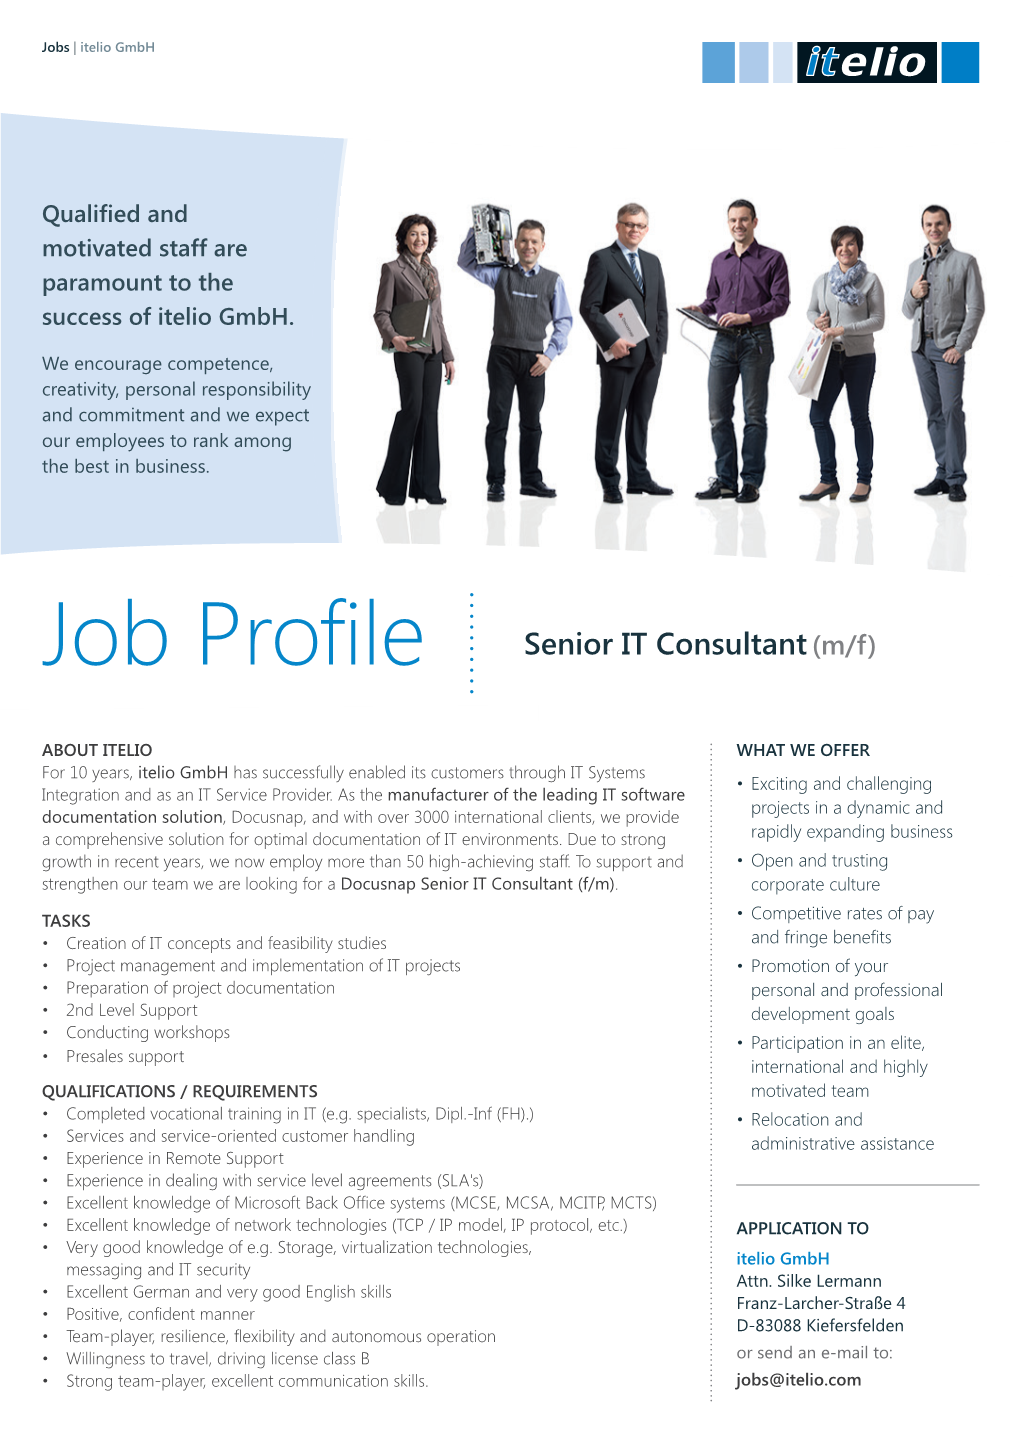 Job Profile Senior IT Consultant(M/F)